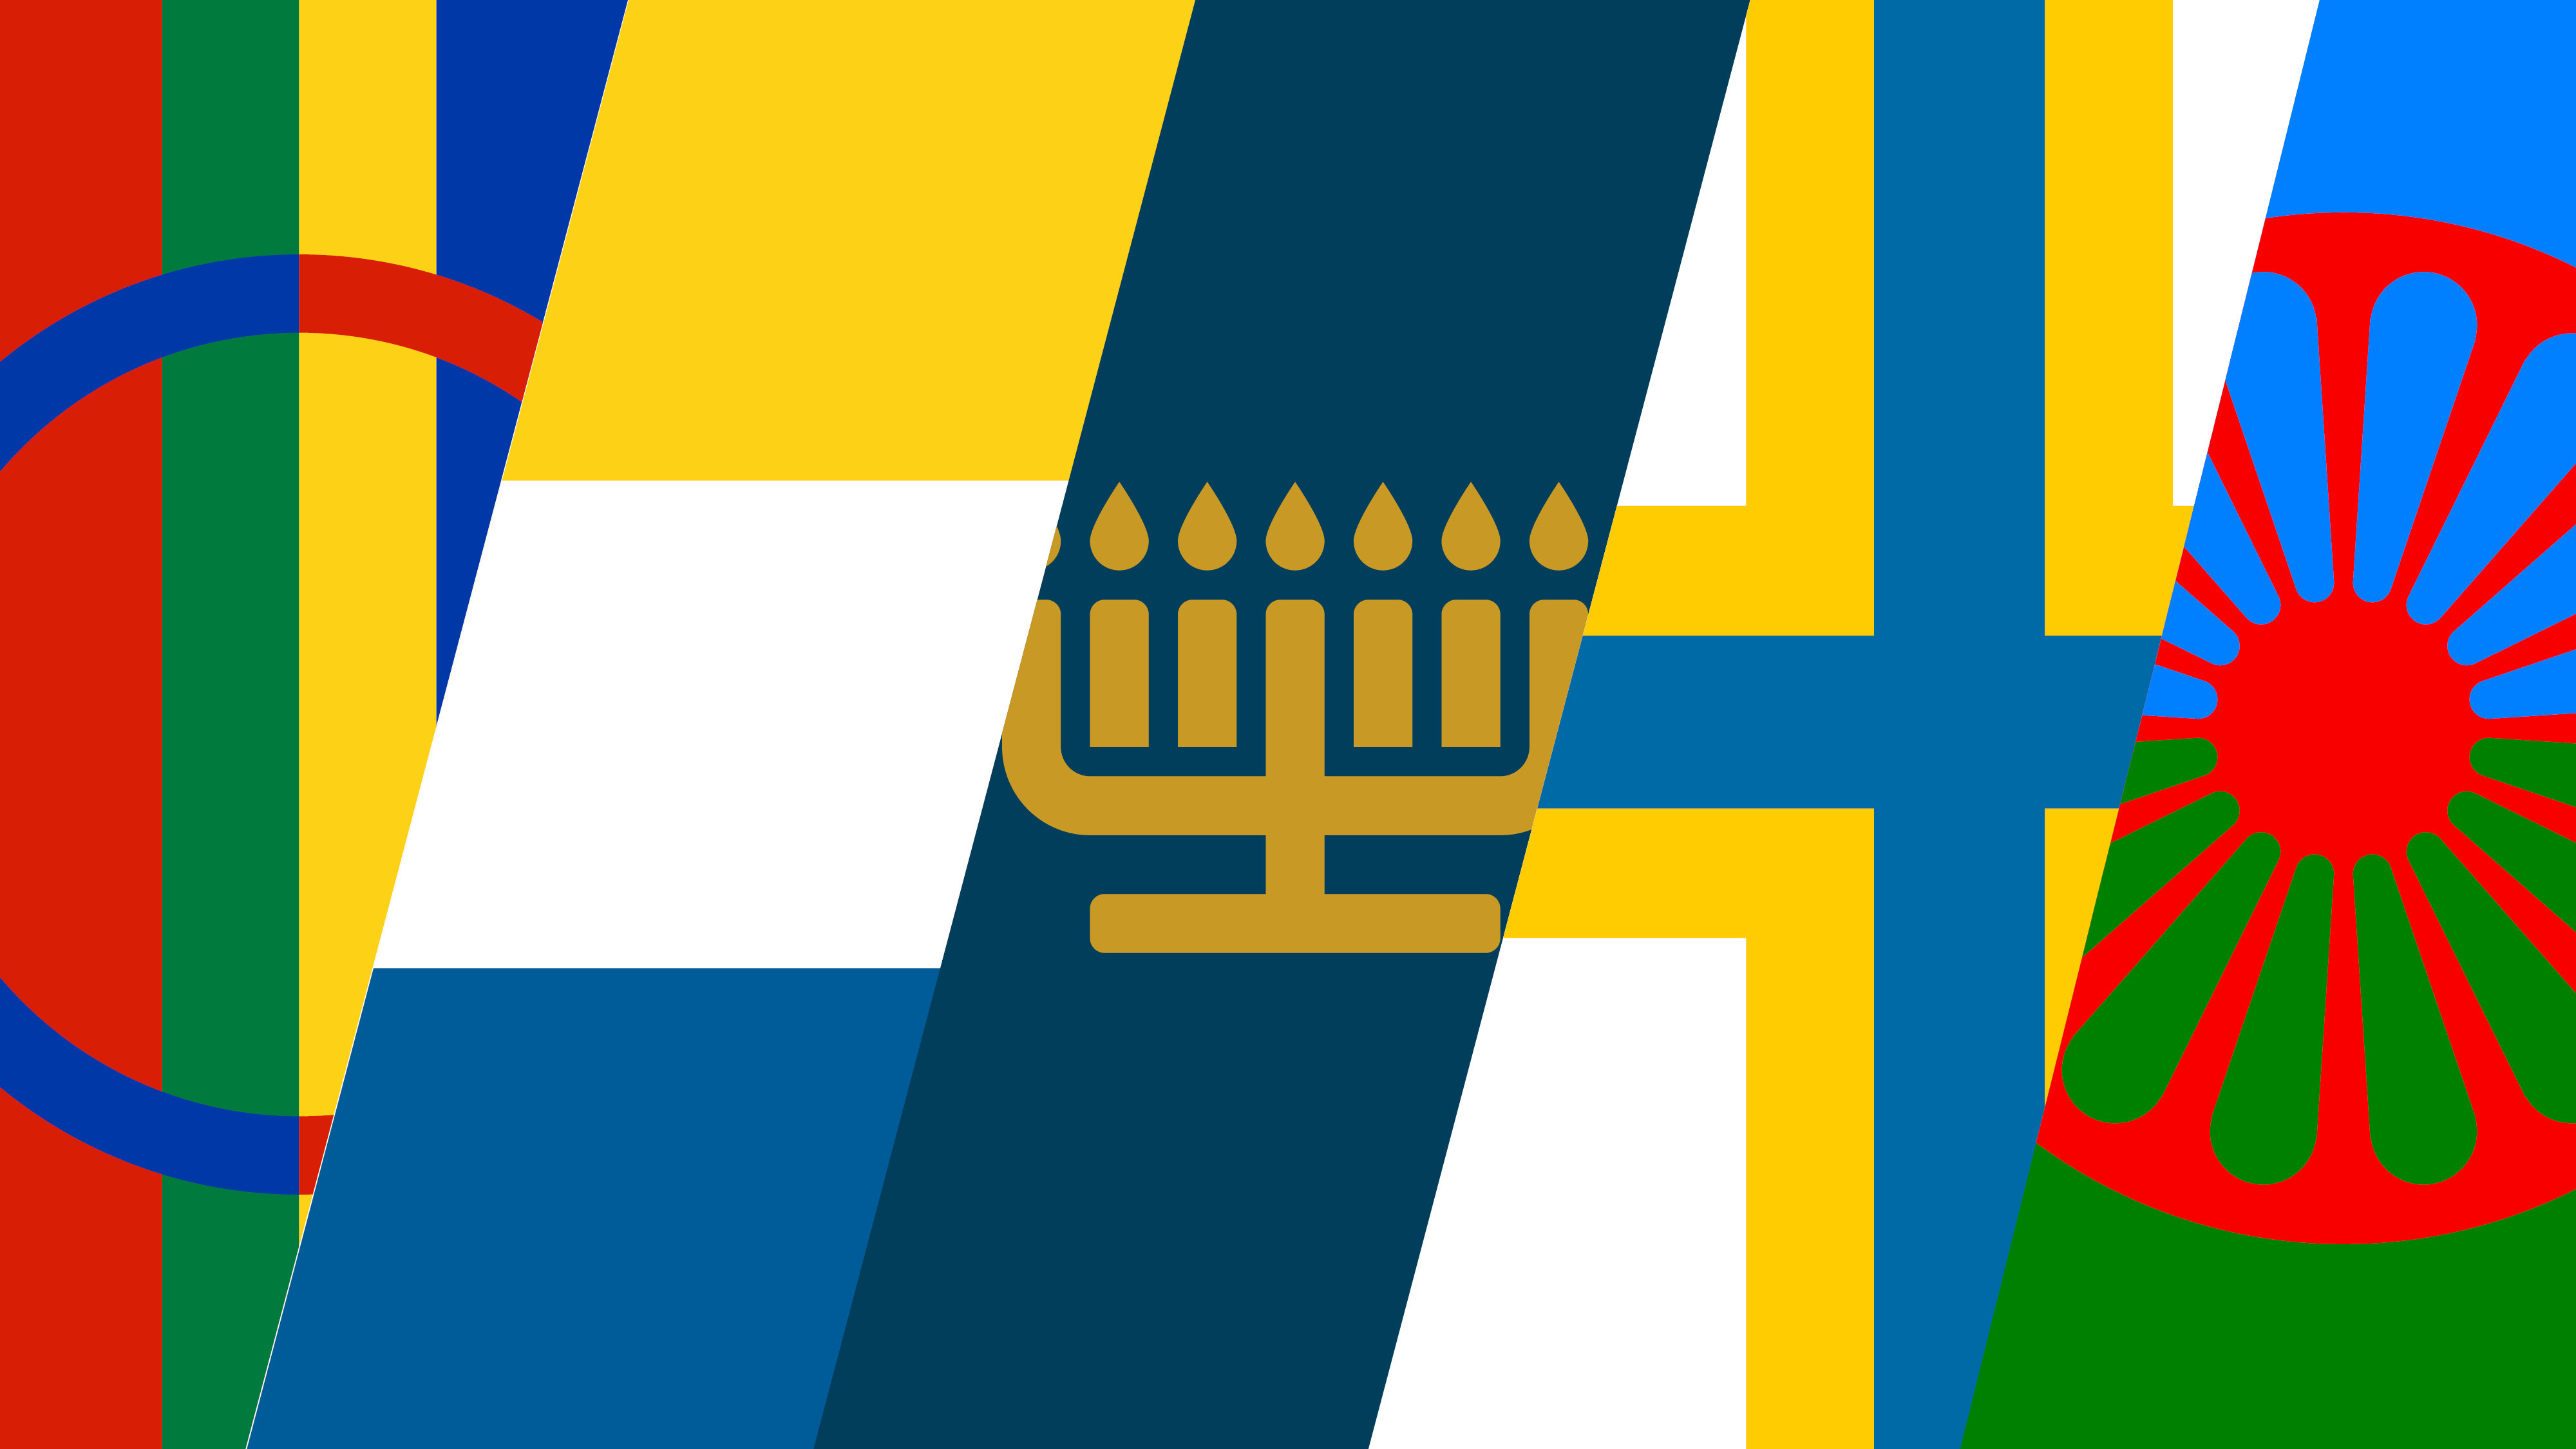 Gemensam bild på alla flaggor och symboler för Sveriges nationella minoriteter.